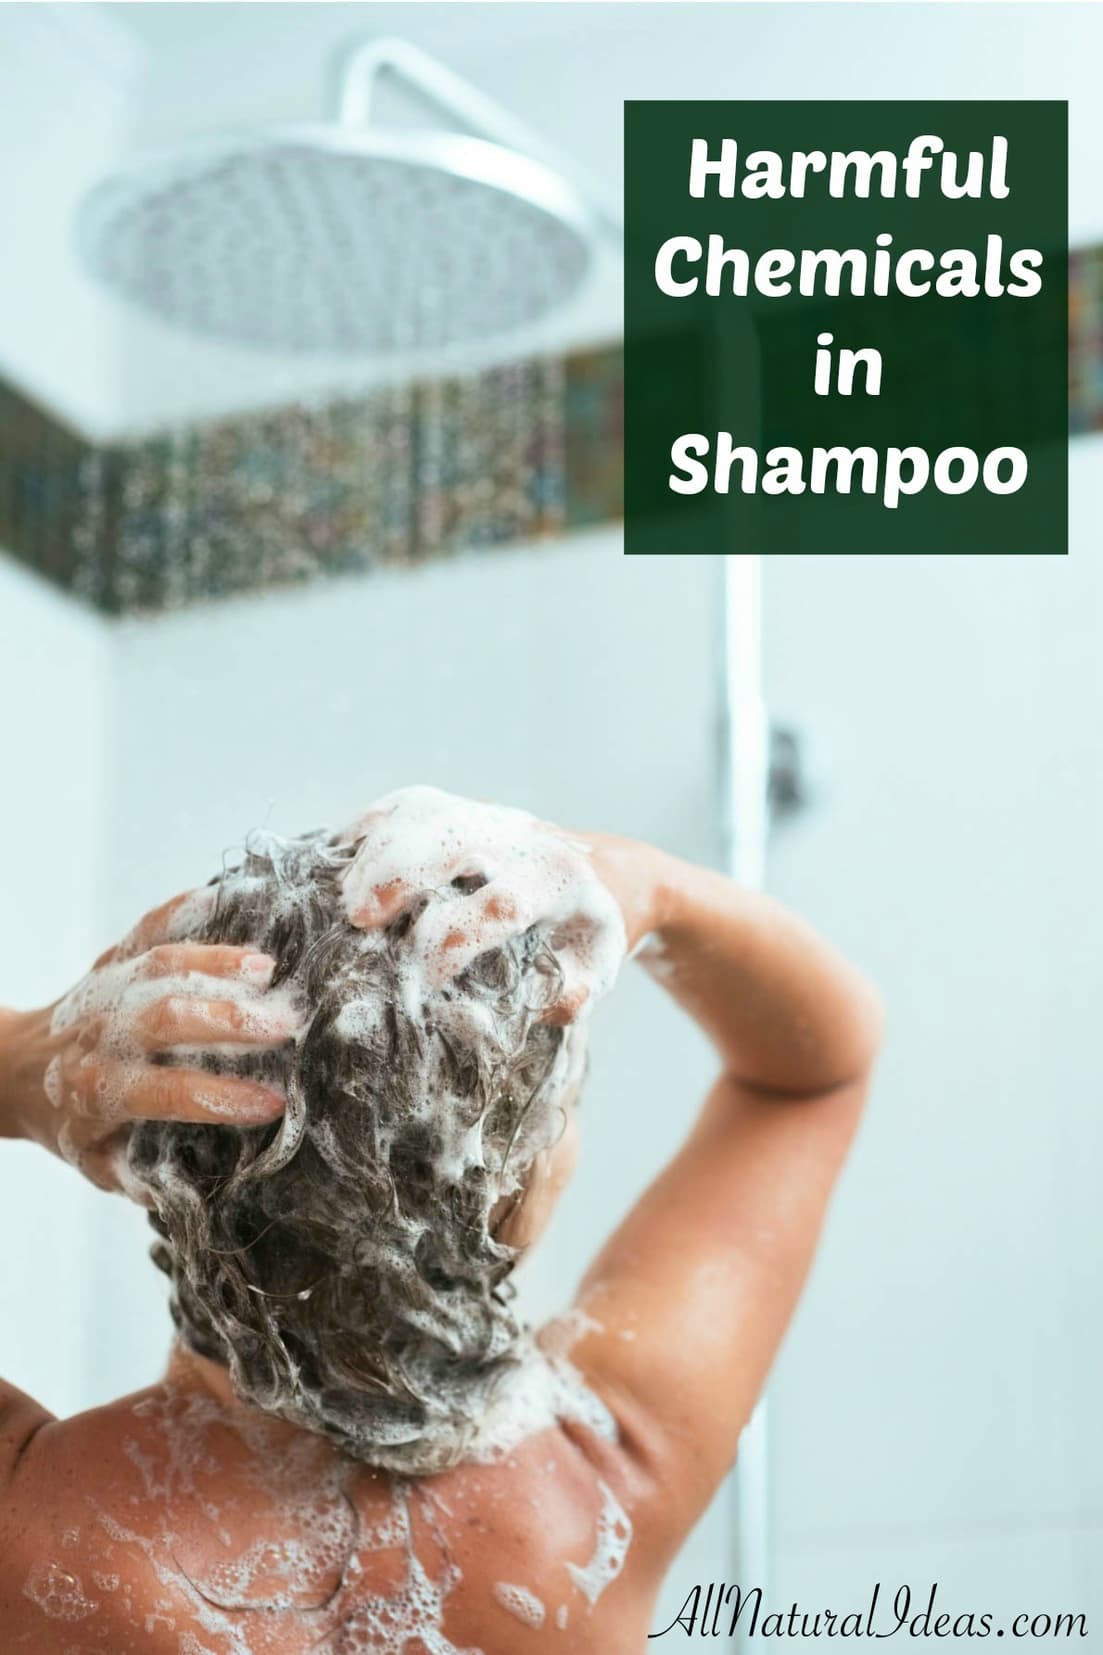 Harmful chemicals in shampoo